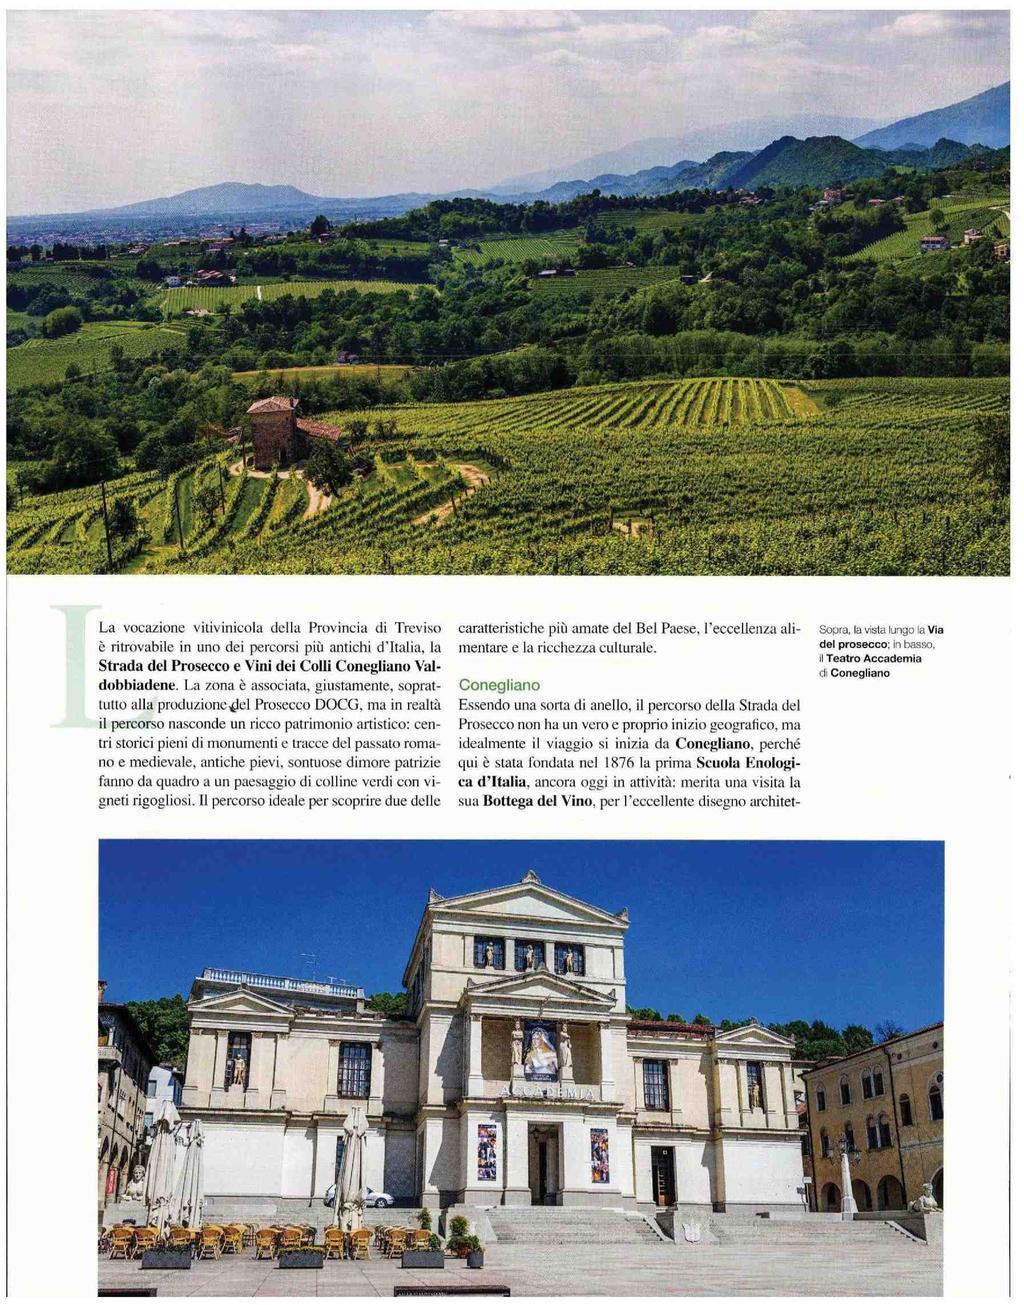 La vocazione vitivinicola della Provincia di Treviso caratteristiche più amate del Bel Paese, l'eccellenza alimentare e la ricchezza culturale.